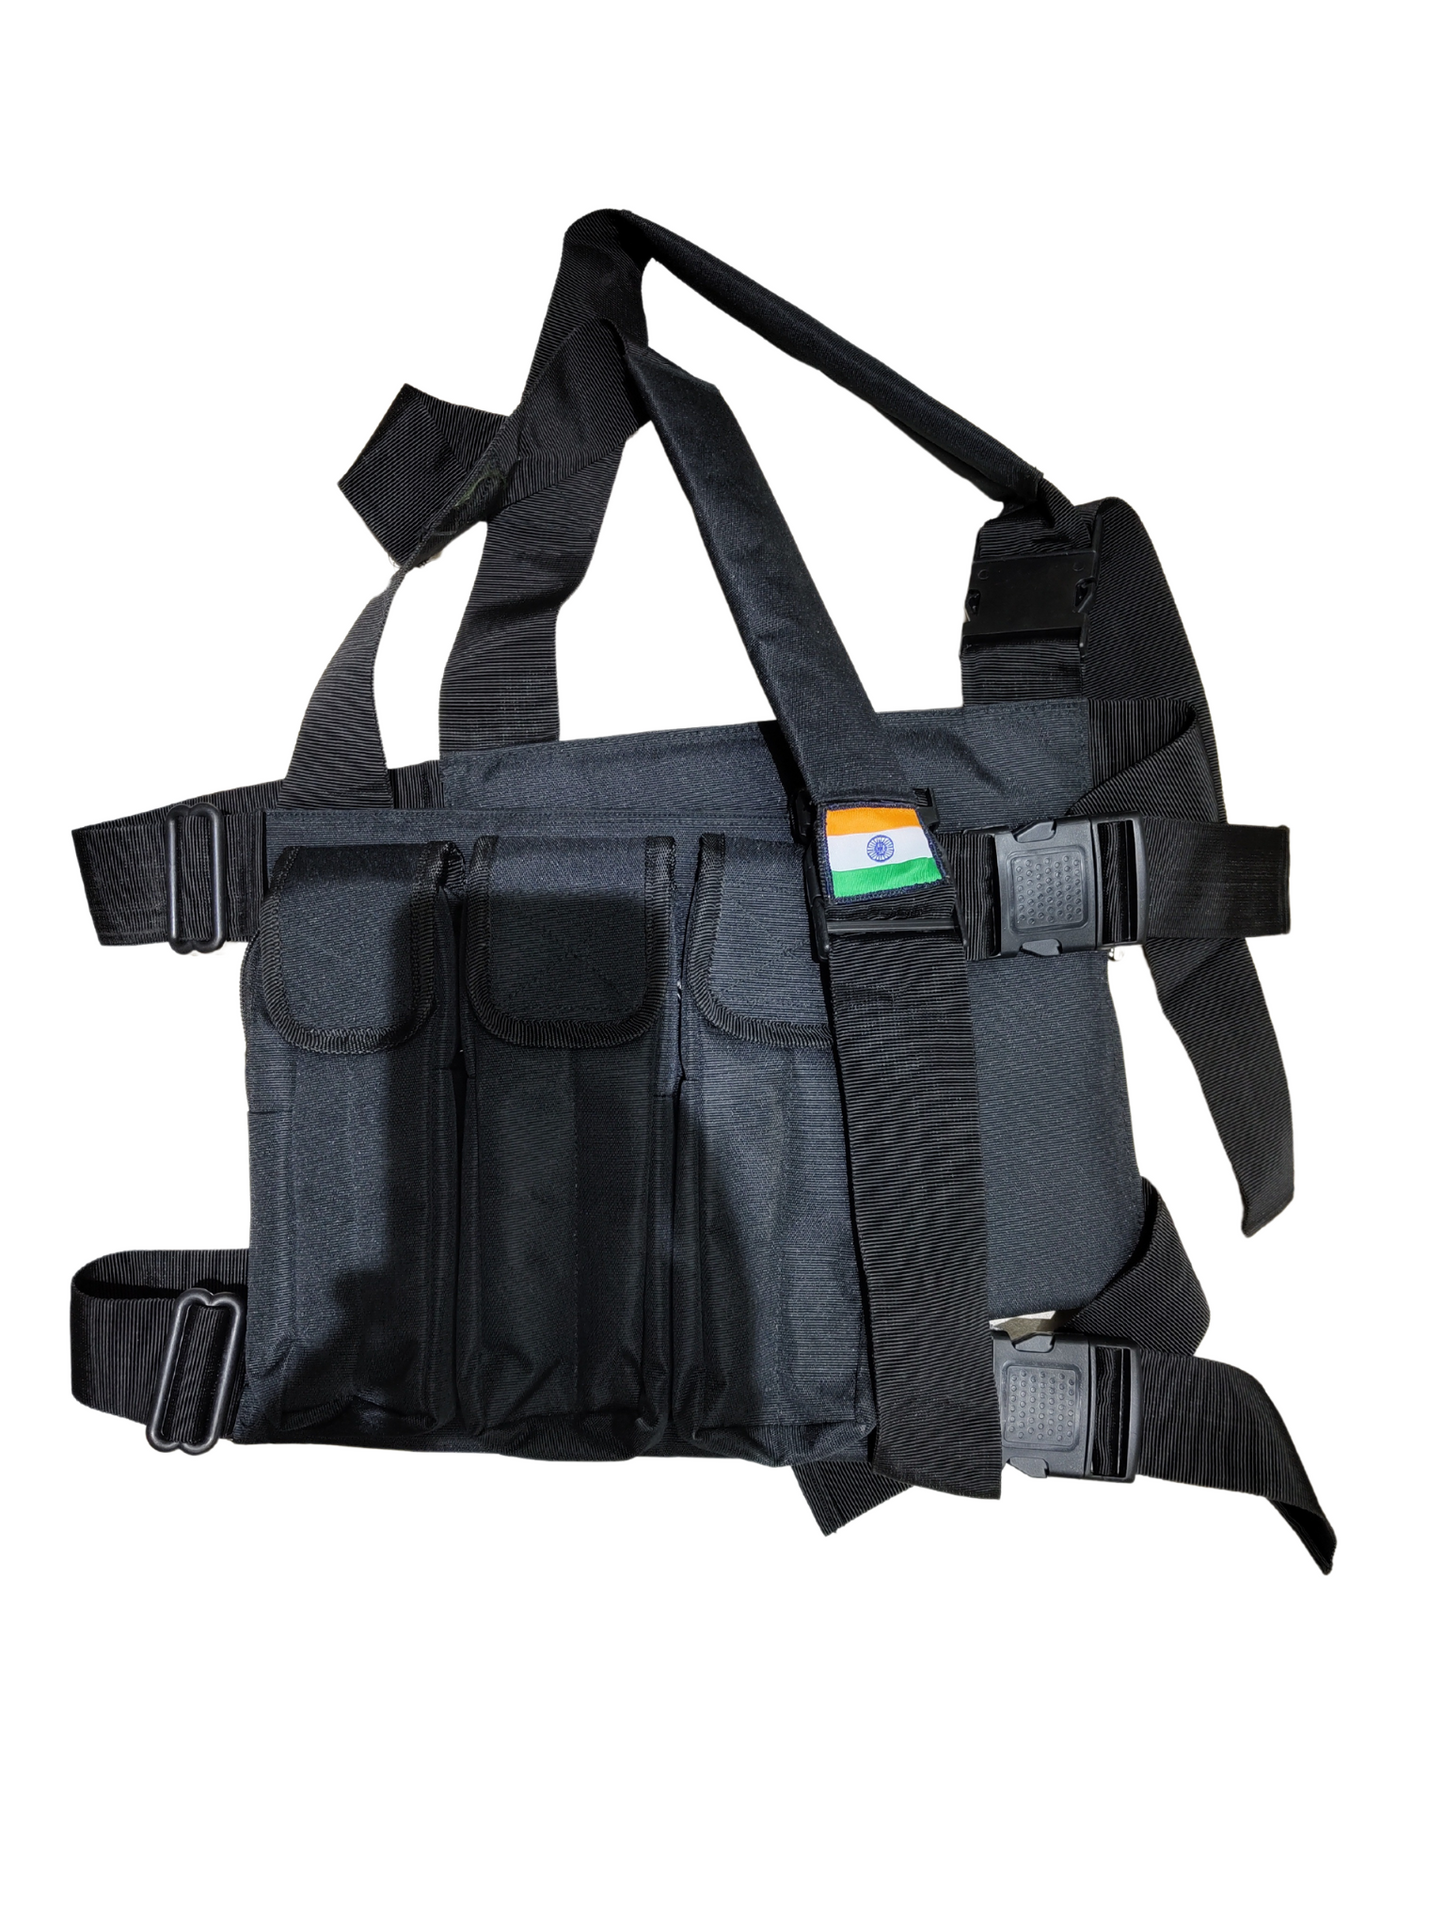 AK47 tactical Vest Pouch With Tricolor Logo - Black